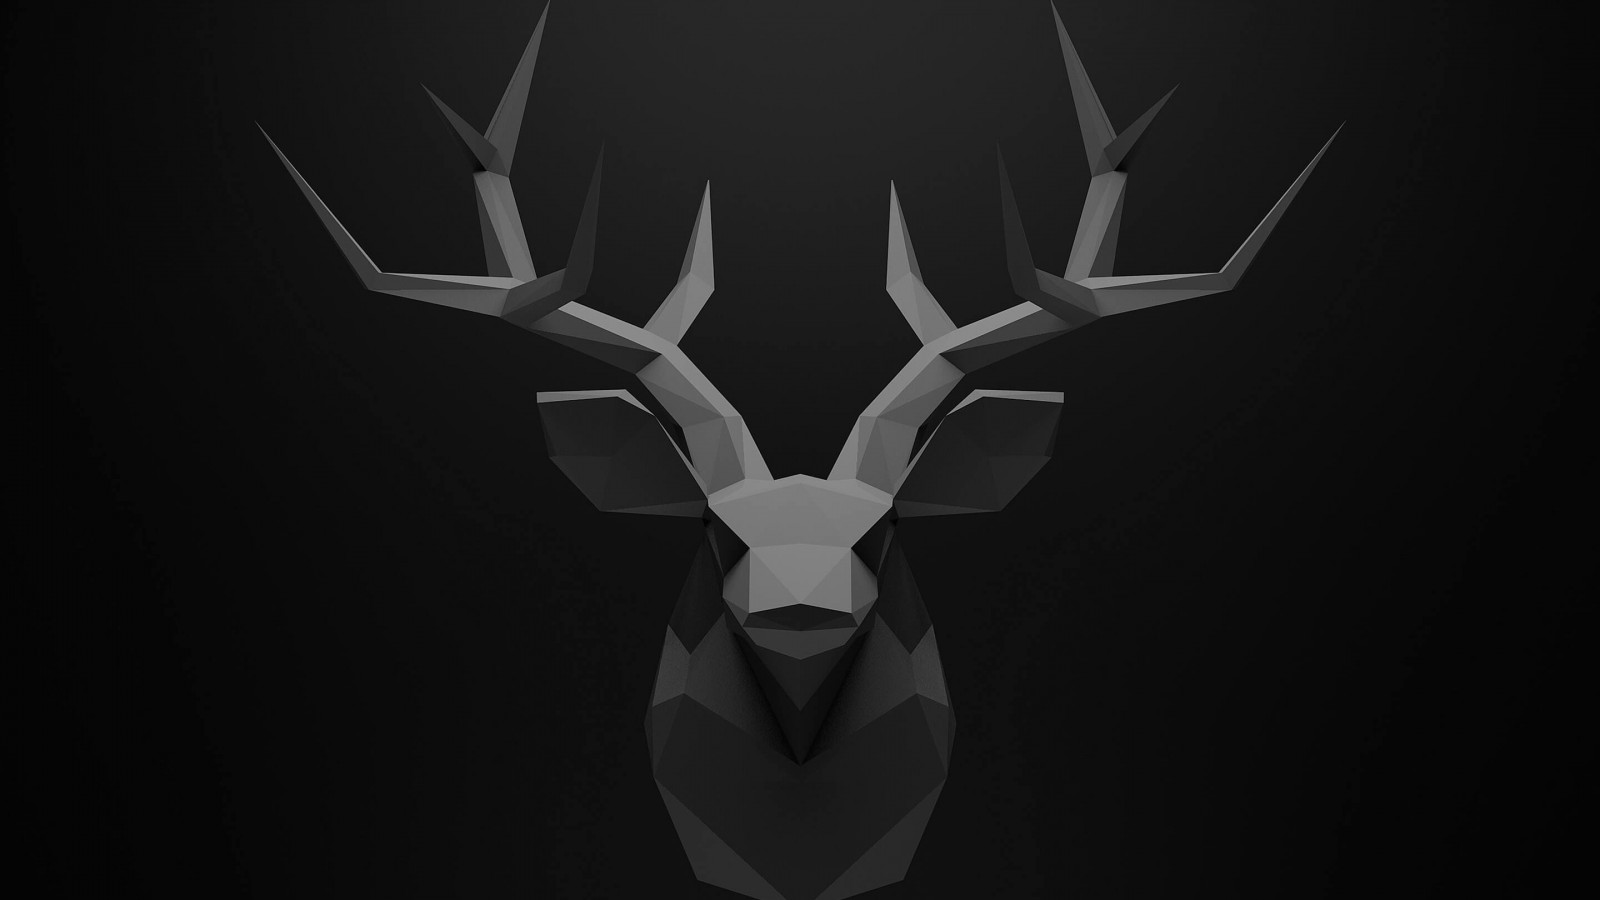 Low Poly Deer Head Wallpaper for Desktop 1600x900